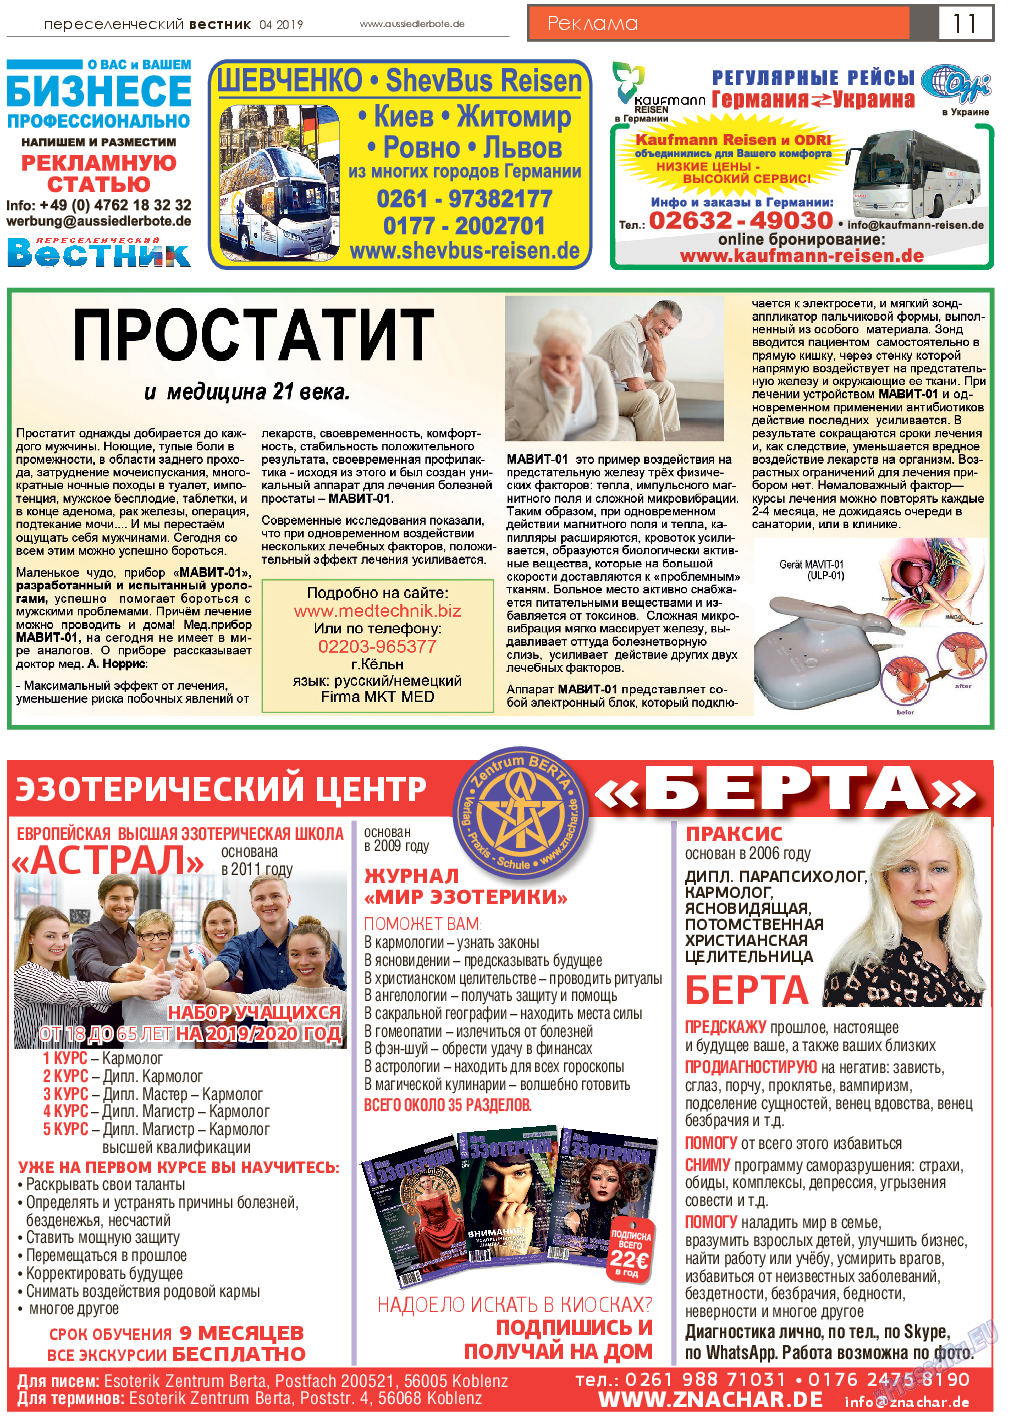 Переселенческий вестник, газета. 2019 №4 стр.11